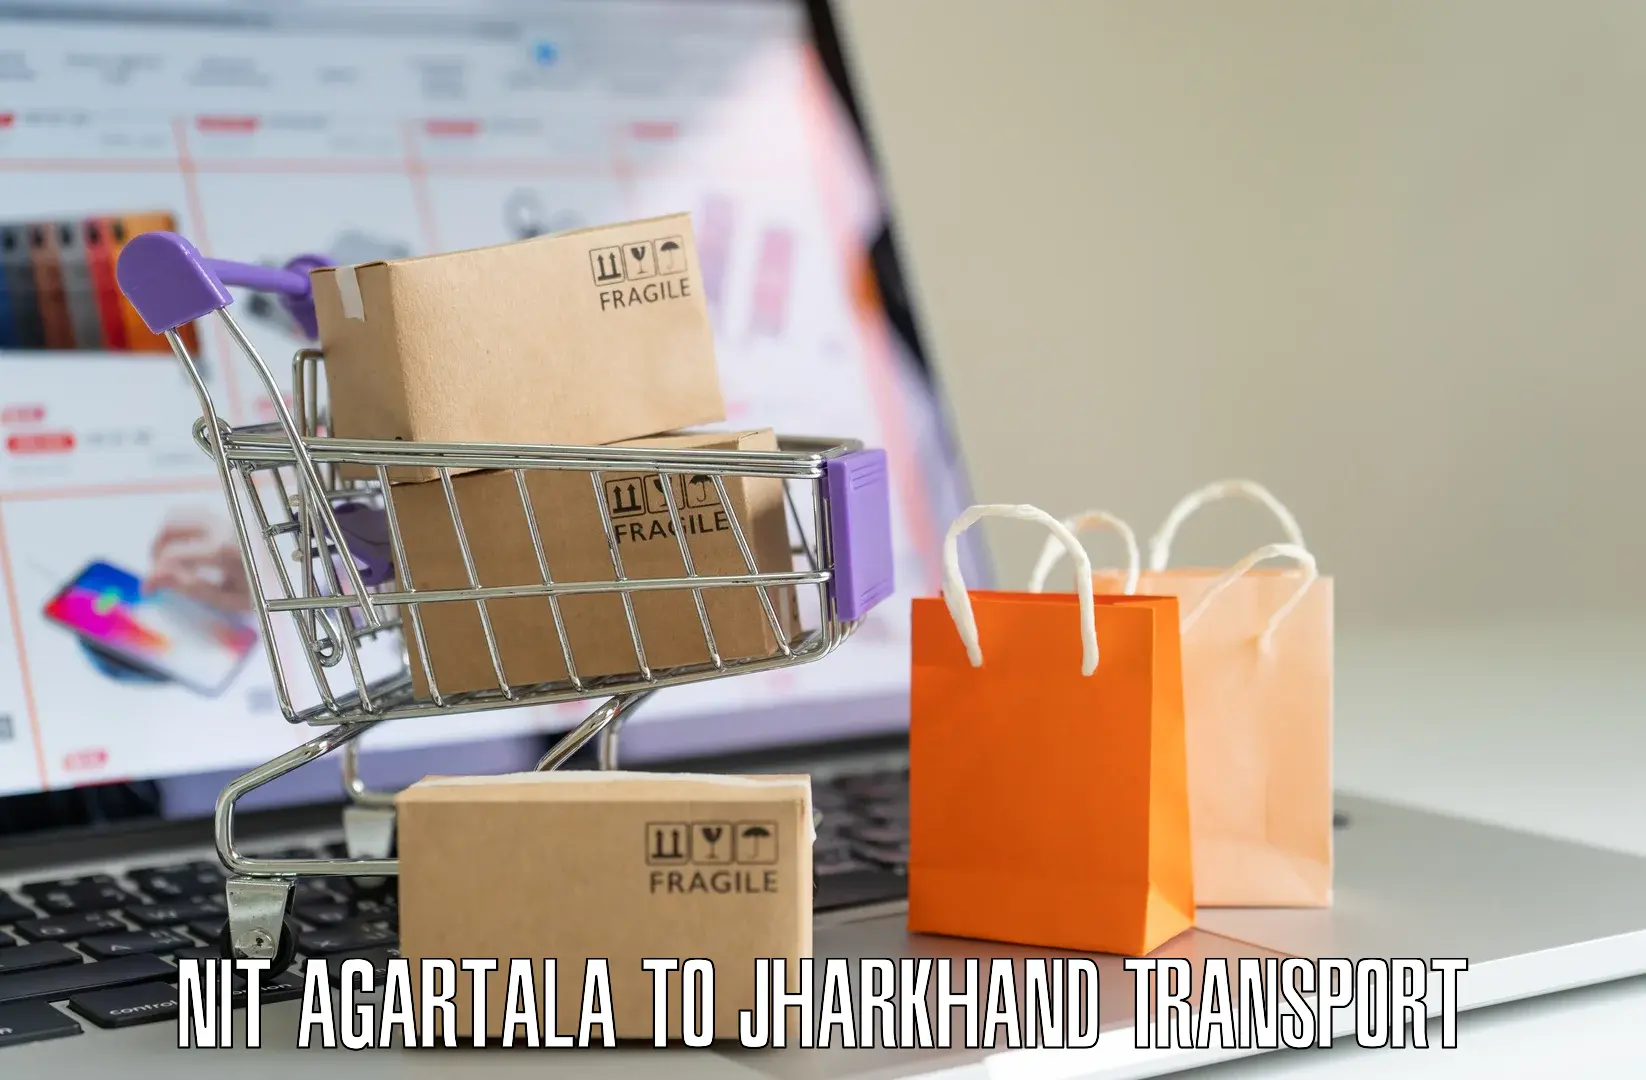 Bike shipping service NIT Agartala to Jamtara